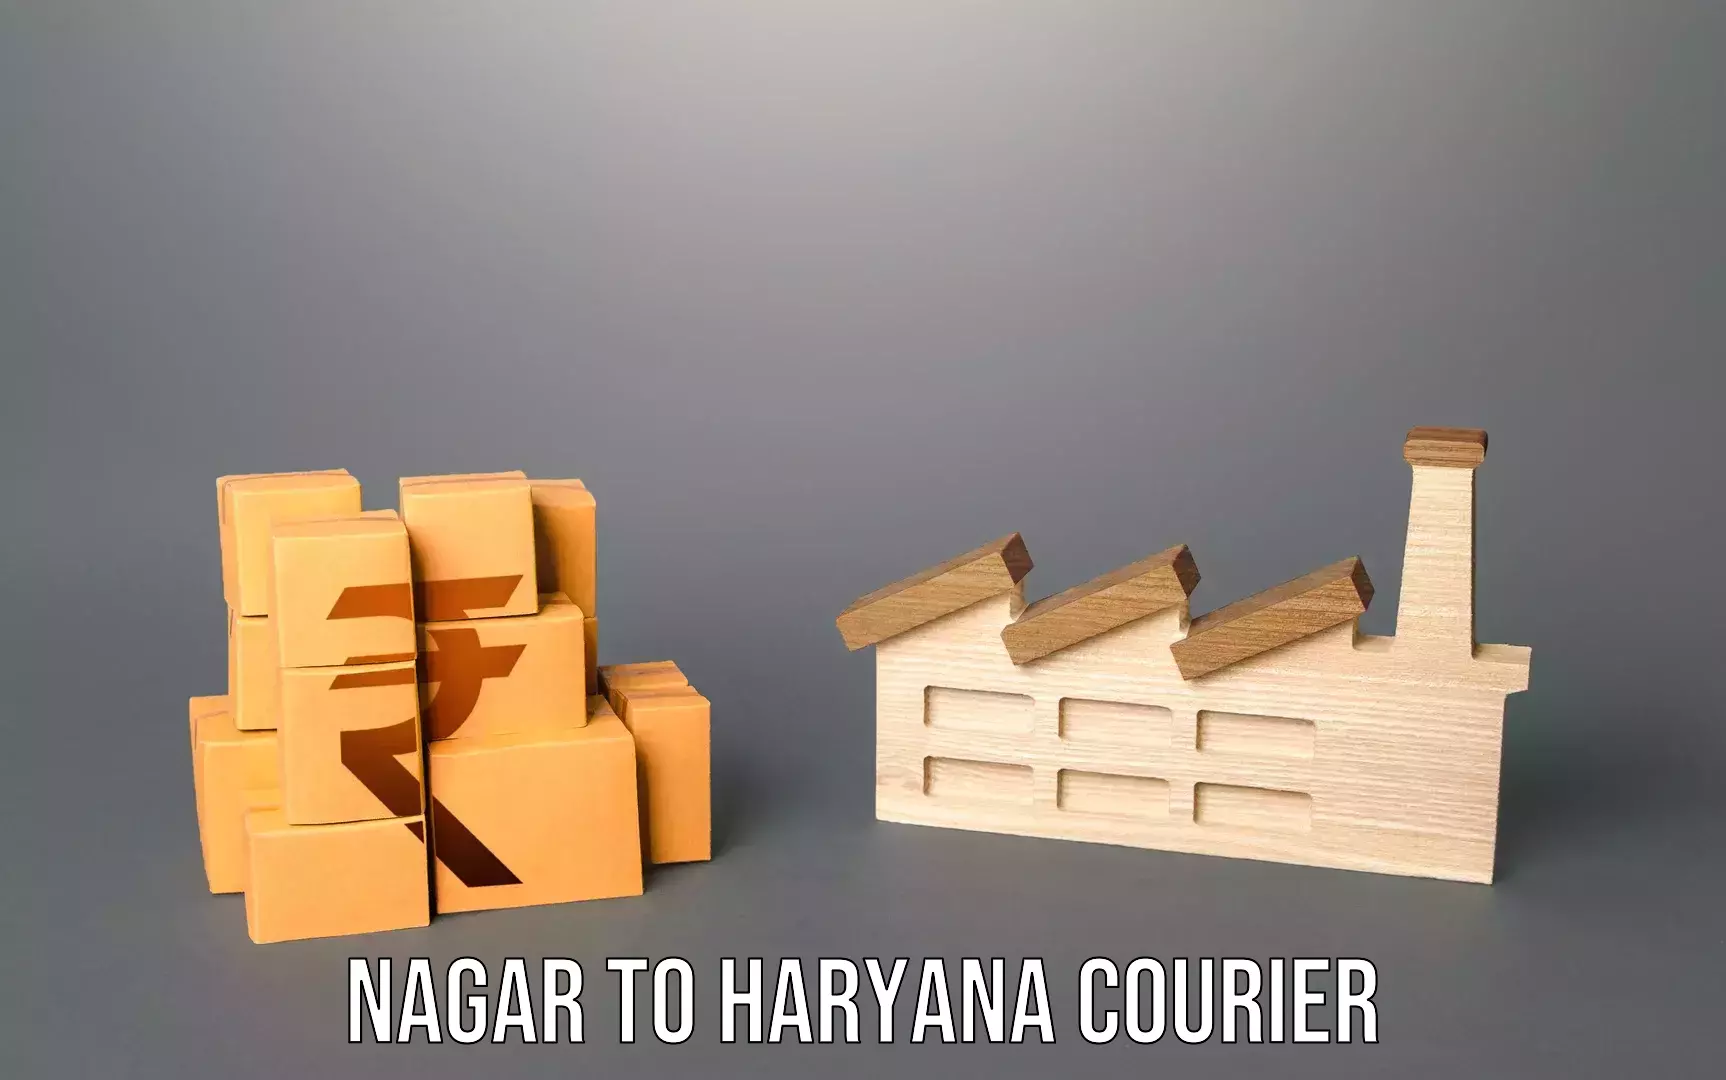 Baggage transport innovation Nagar to Chaudhary Charan Singh Haryana Agricultural University Hisar